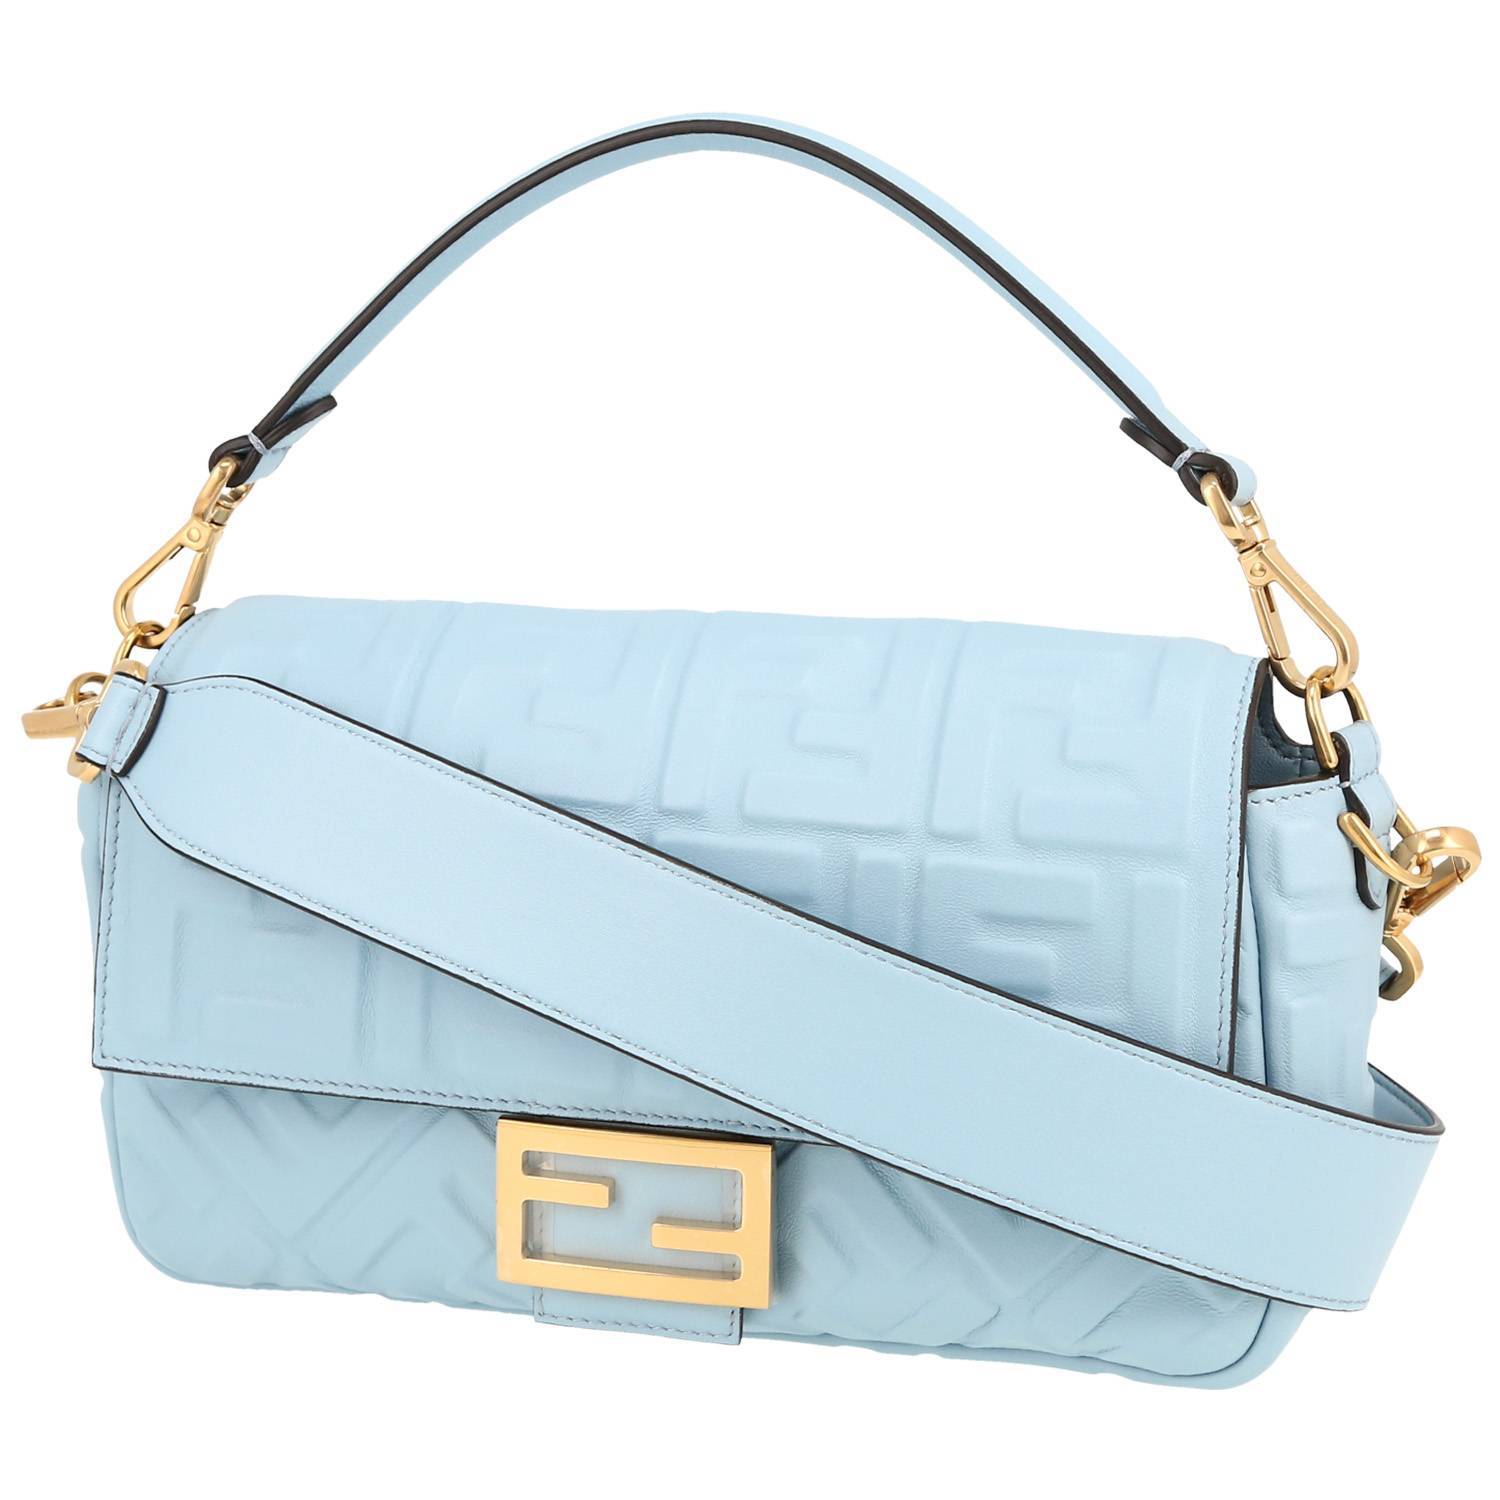 Baguette Handbag In Light Blue Monogram Leather